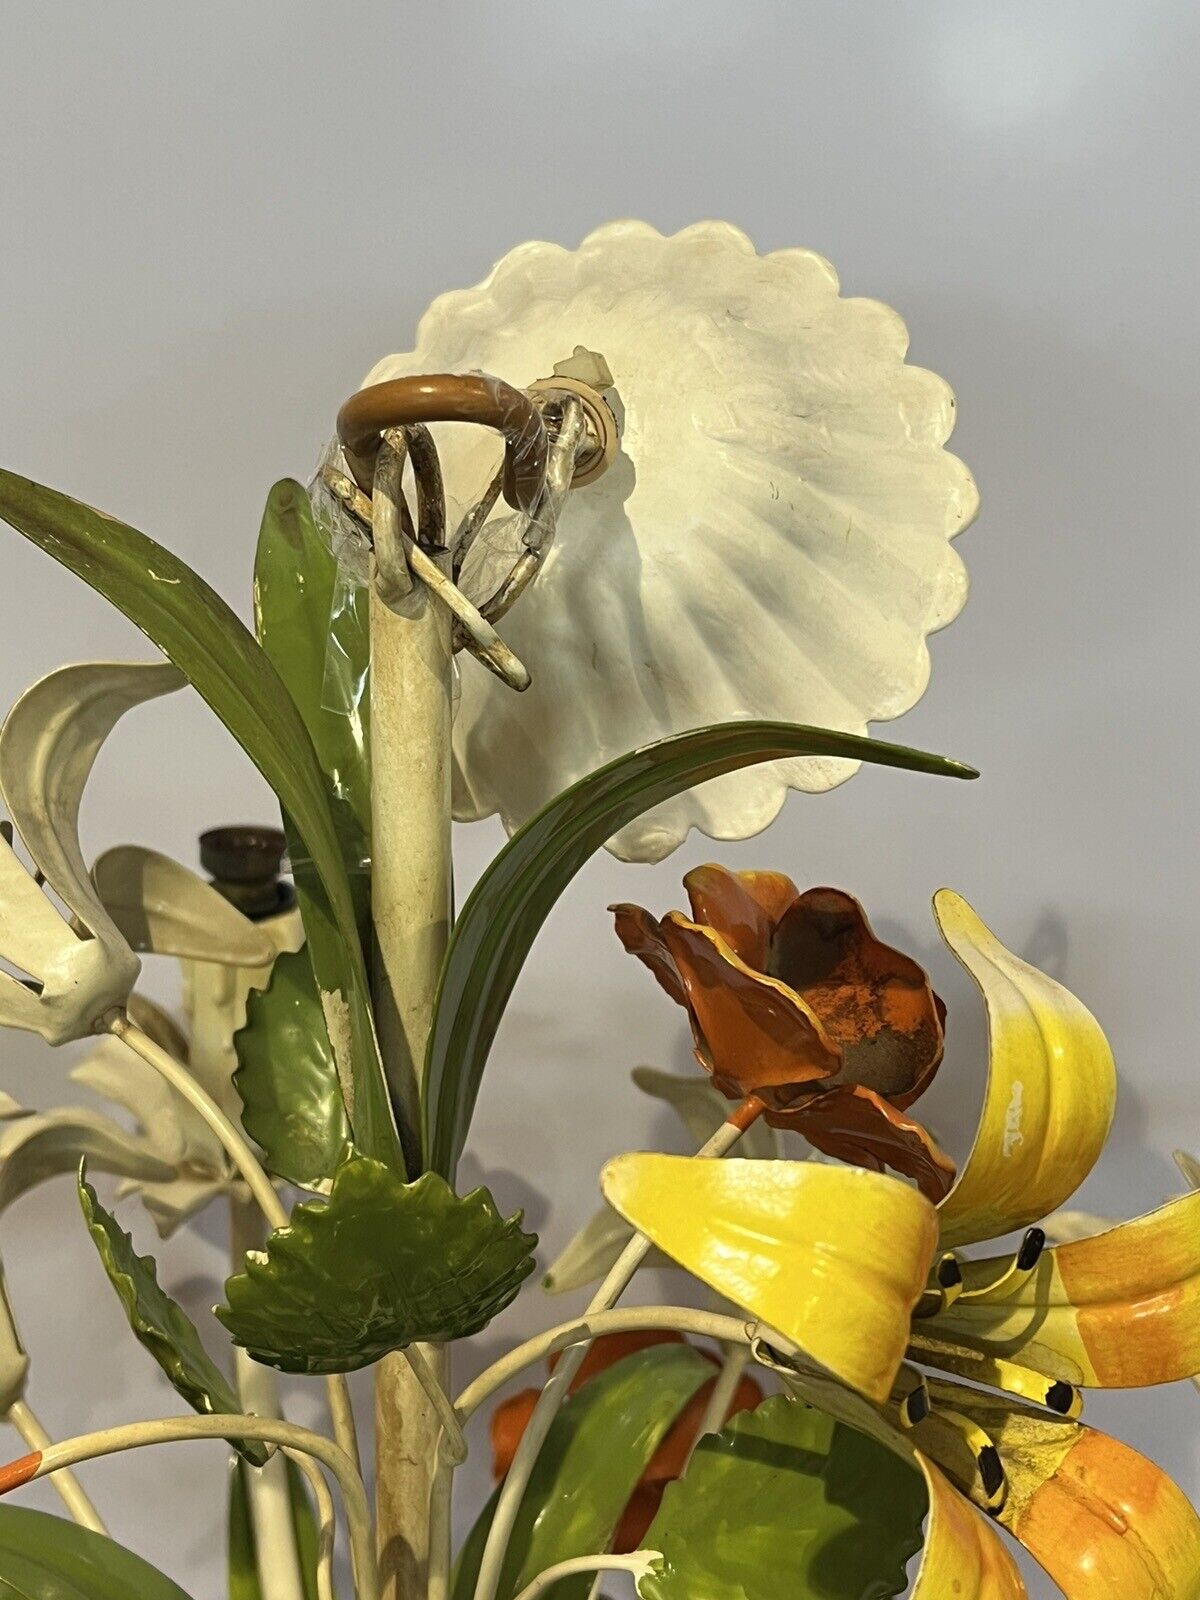 Original Mid Century Italian Toleware Metal Painted Flowers Chandelier